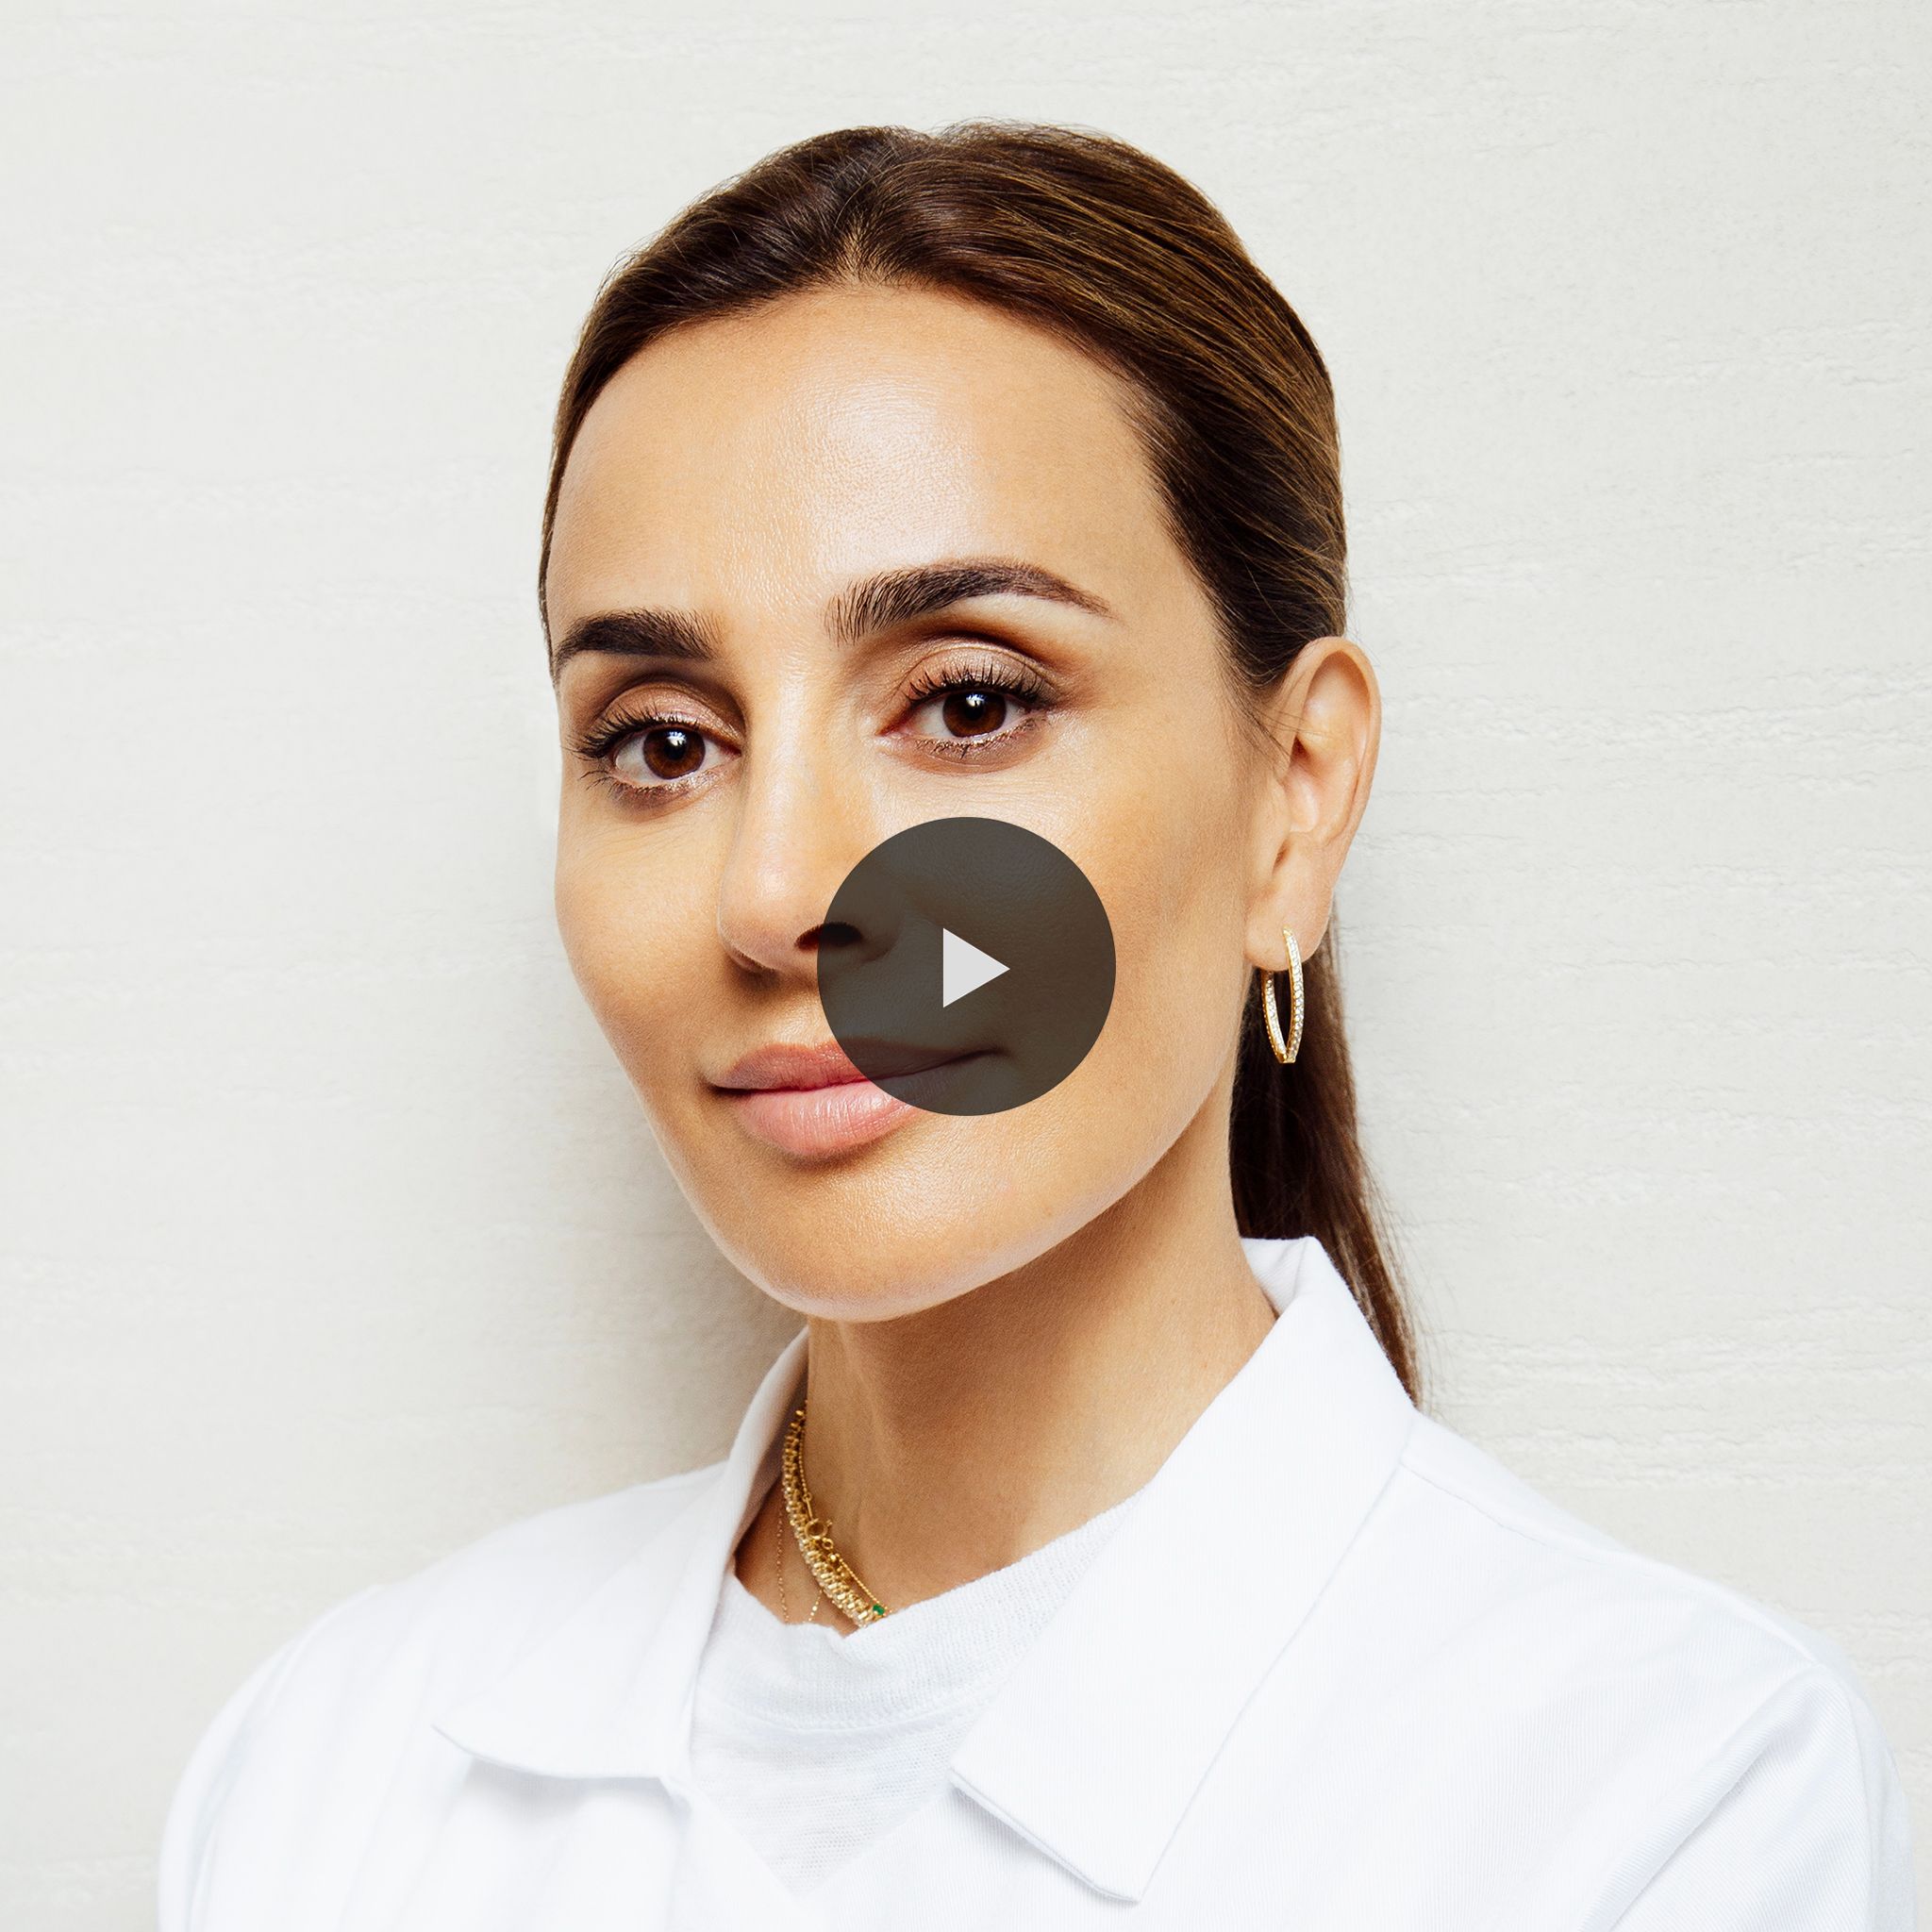 Demystifying skincare with MZ Skin founder Dr Maryam Zamani.